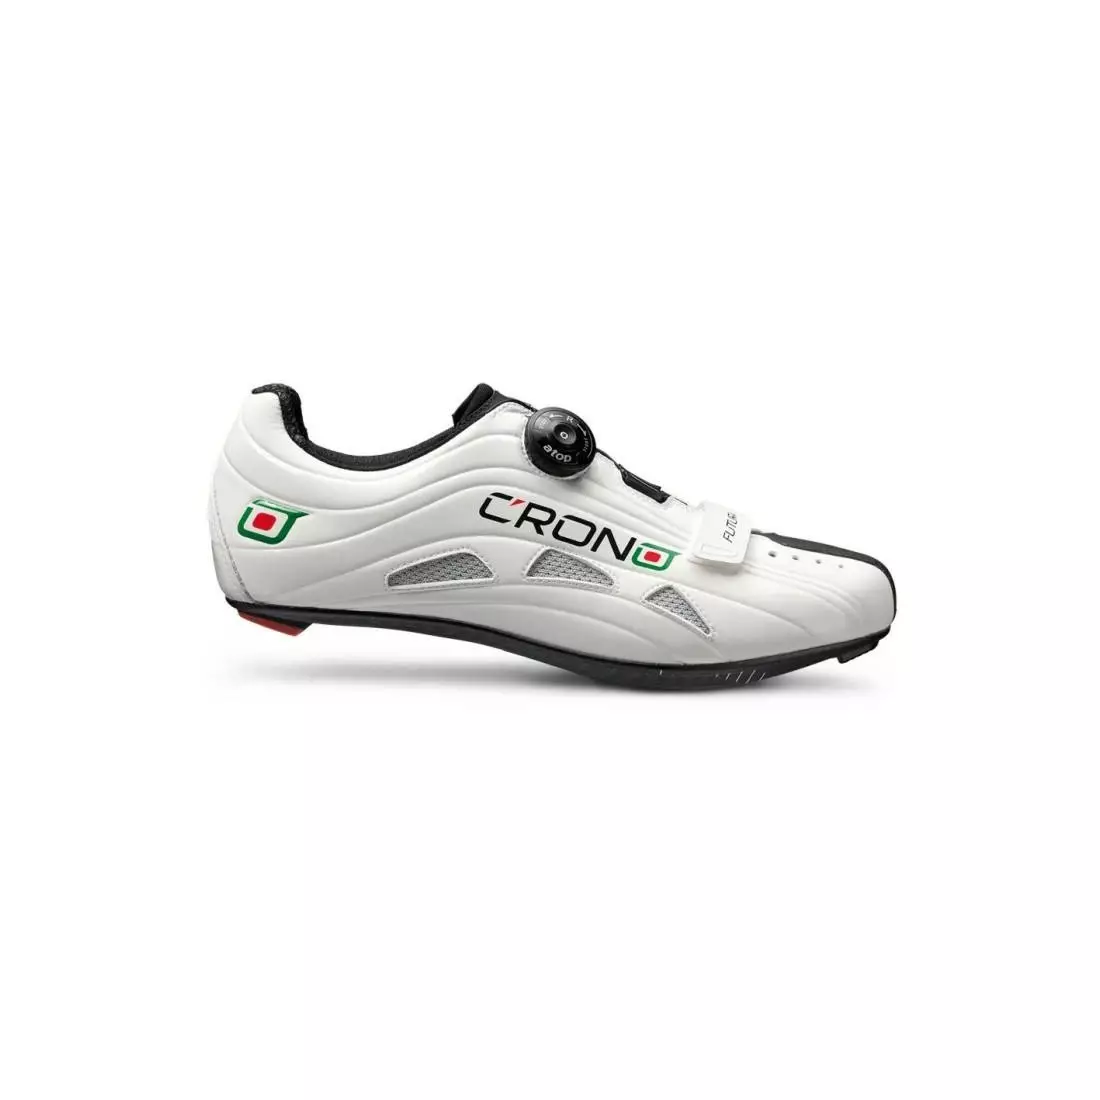 CRONO FUTURA NYLON - road cycling shoes - color: White